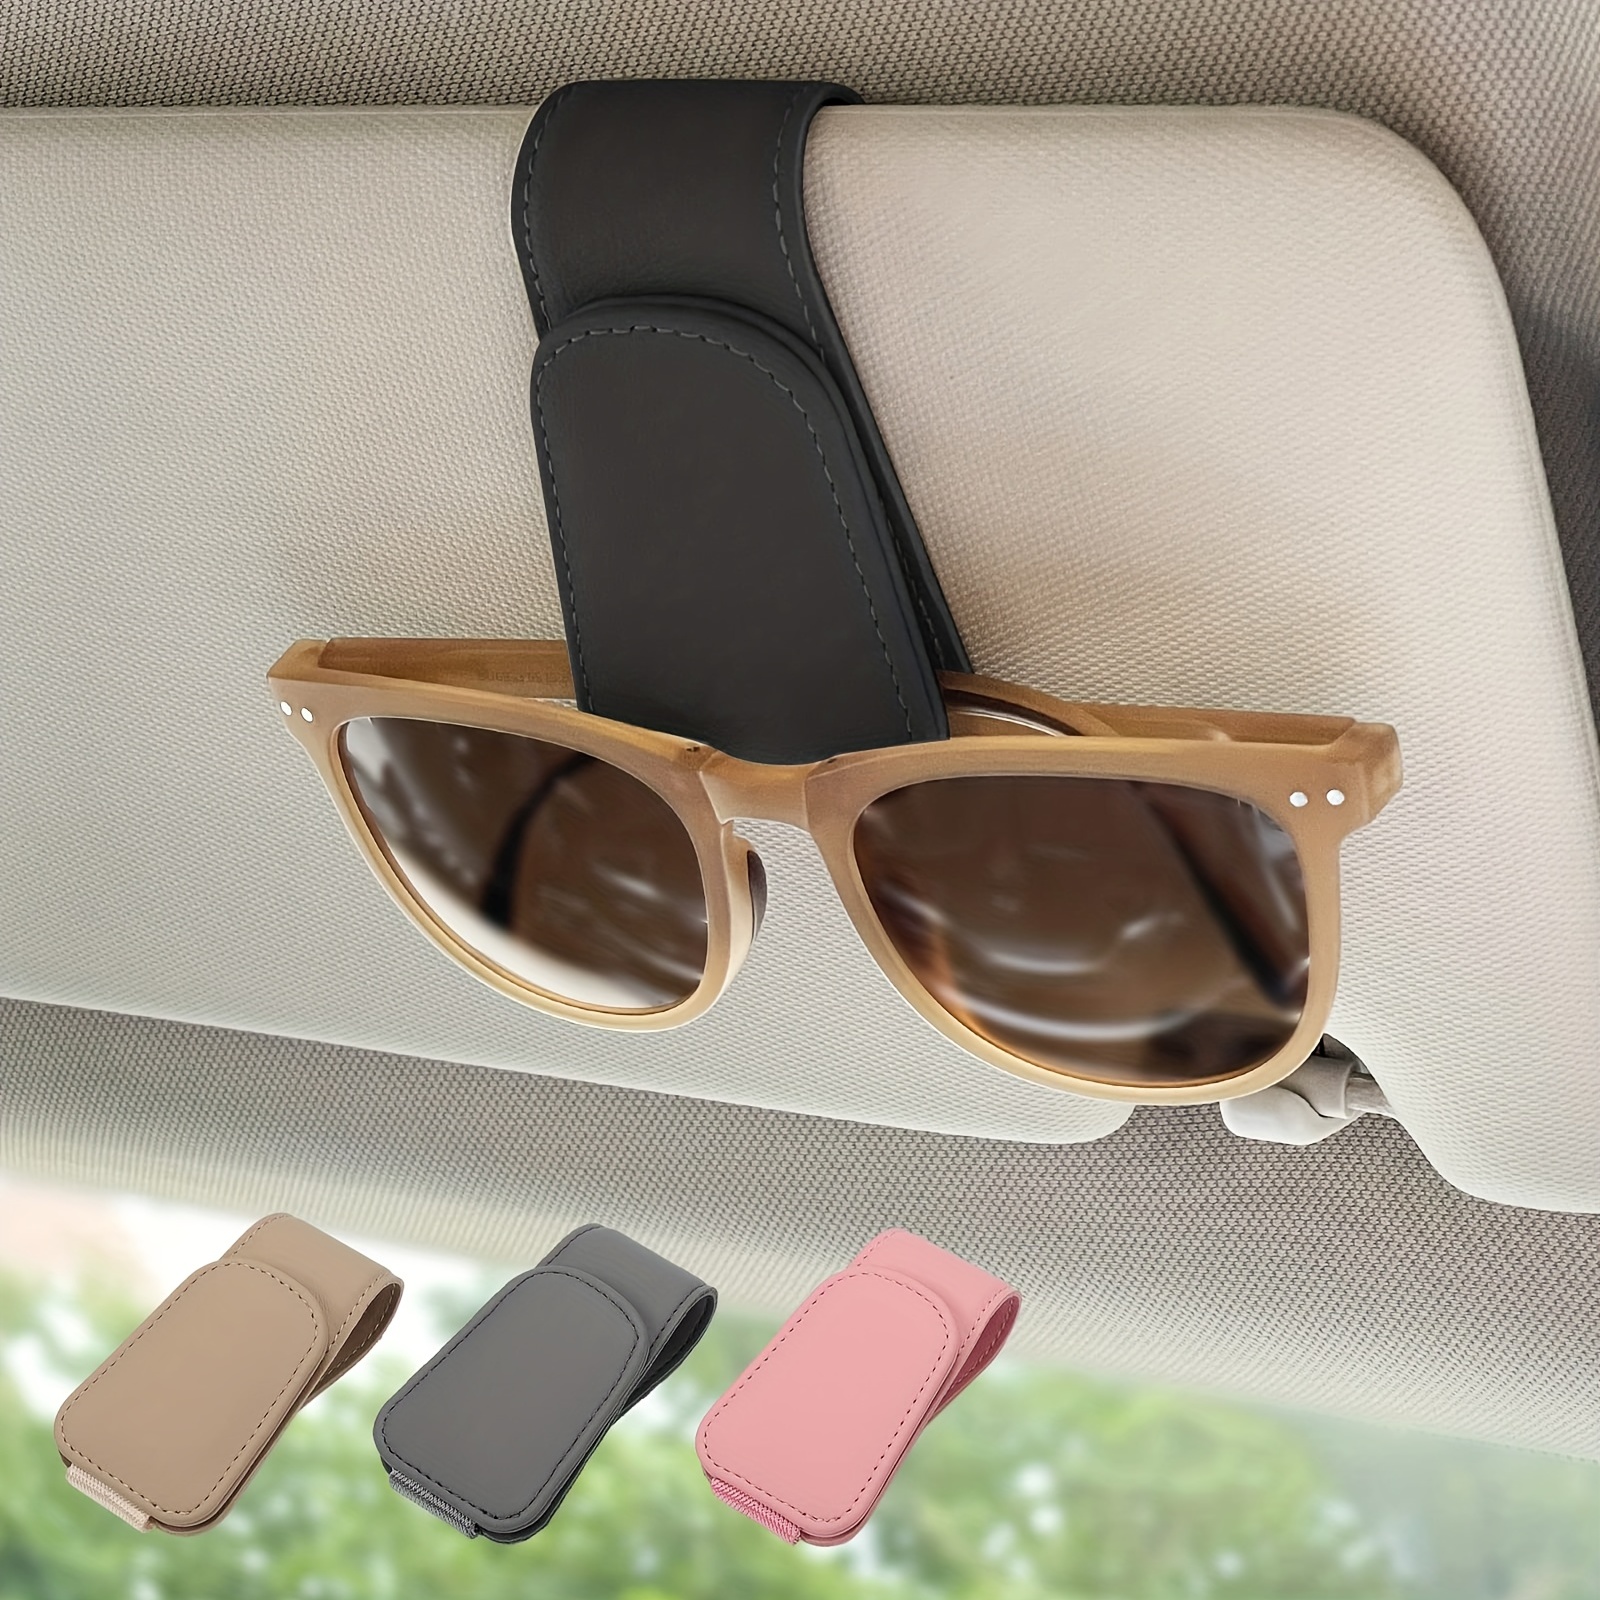 Bling Sunglasses Holder for Car, Leather Magnetic Buckle Sun Visor